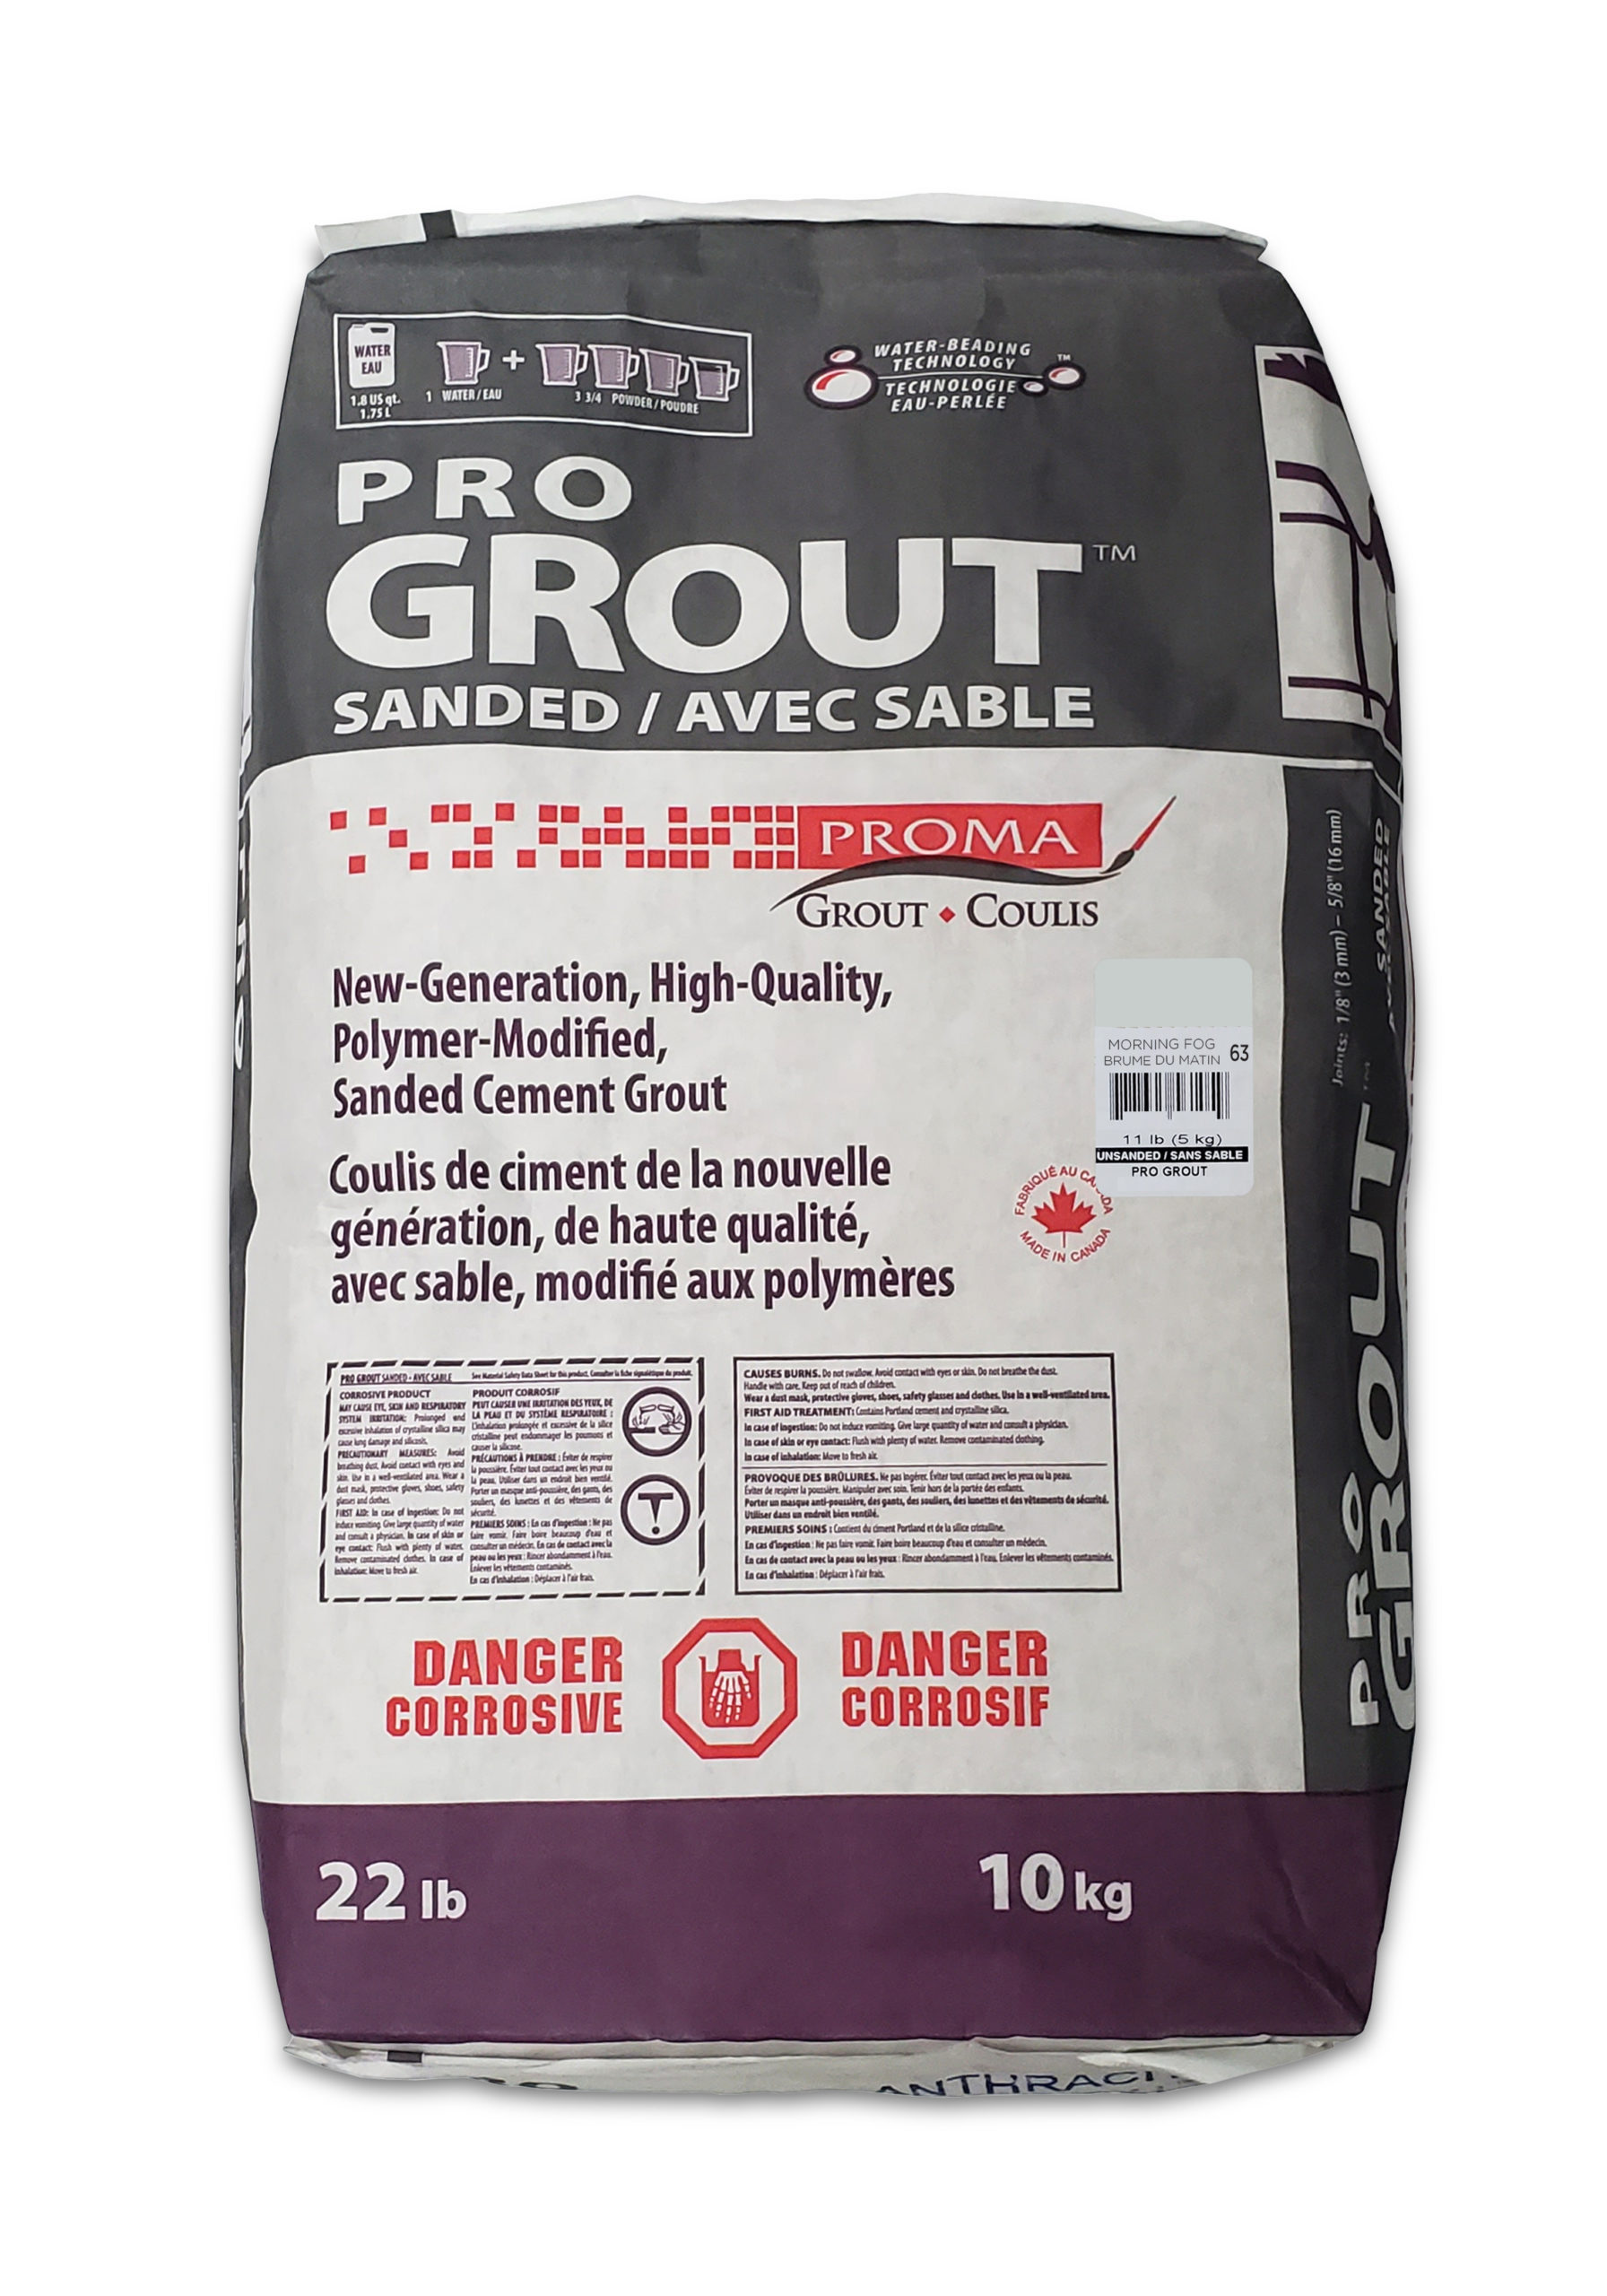 Pro Grout – Sanded_Morning Fog_10kg_22lb